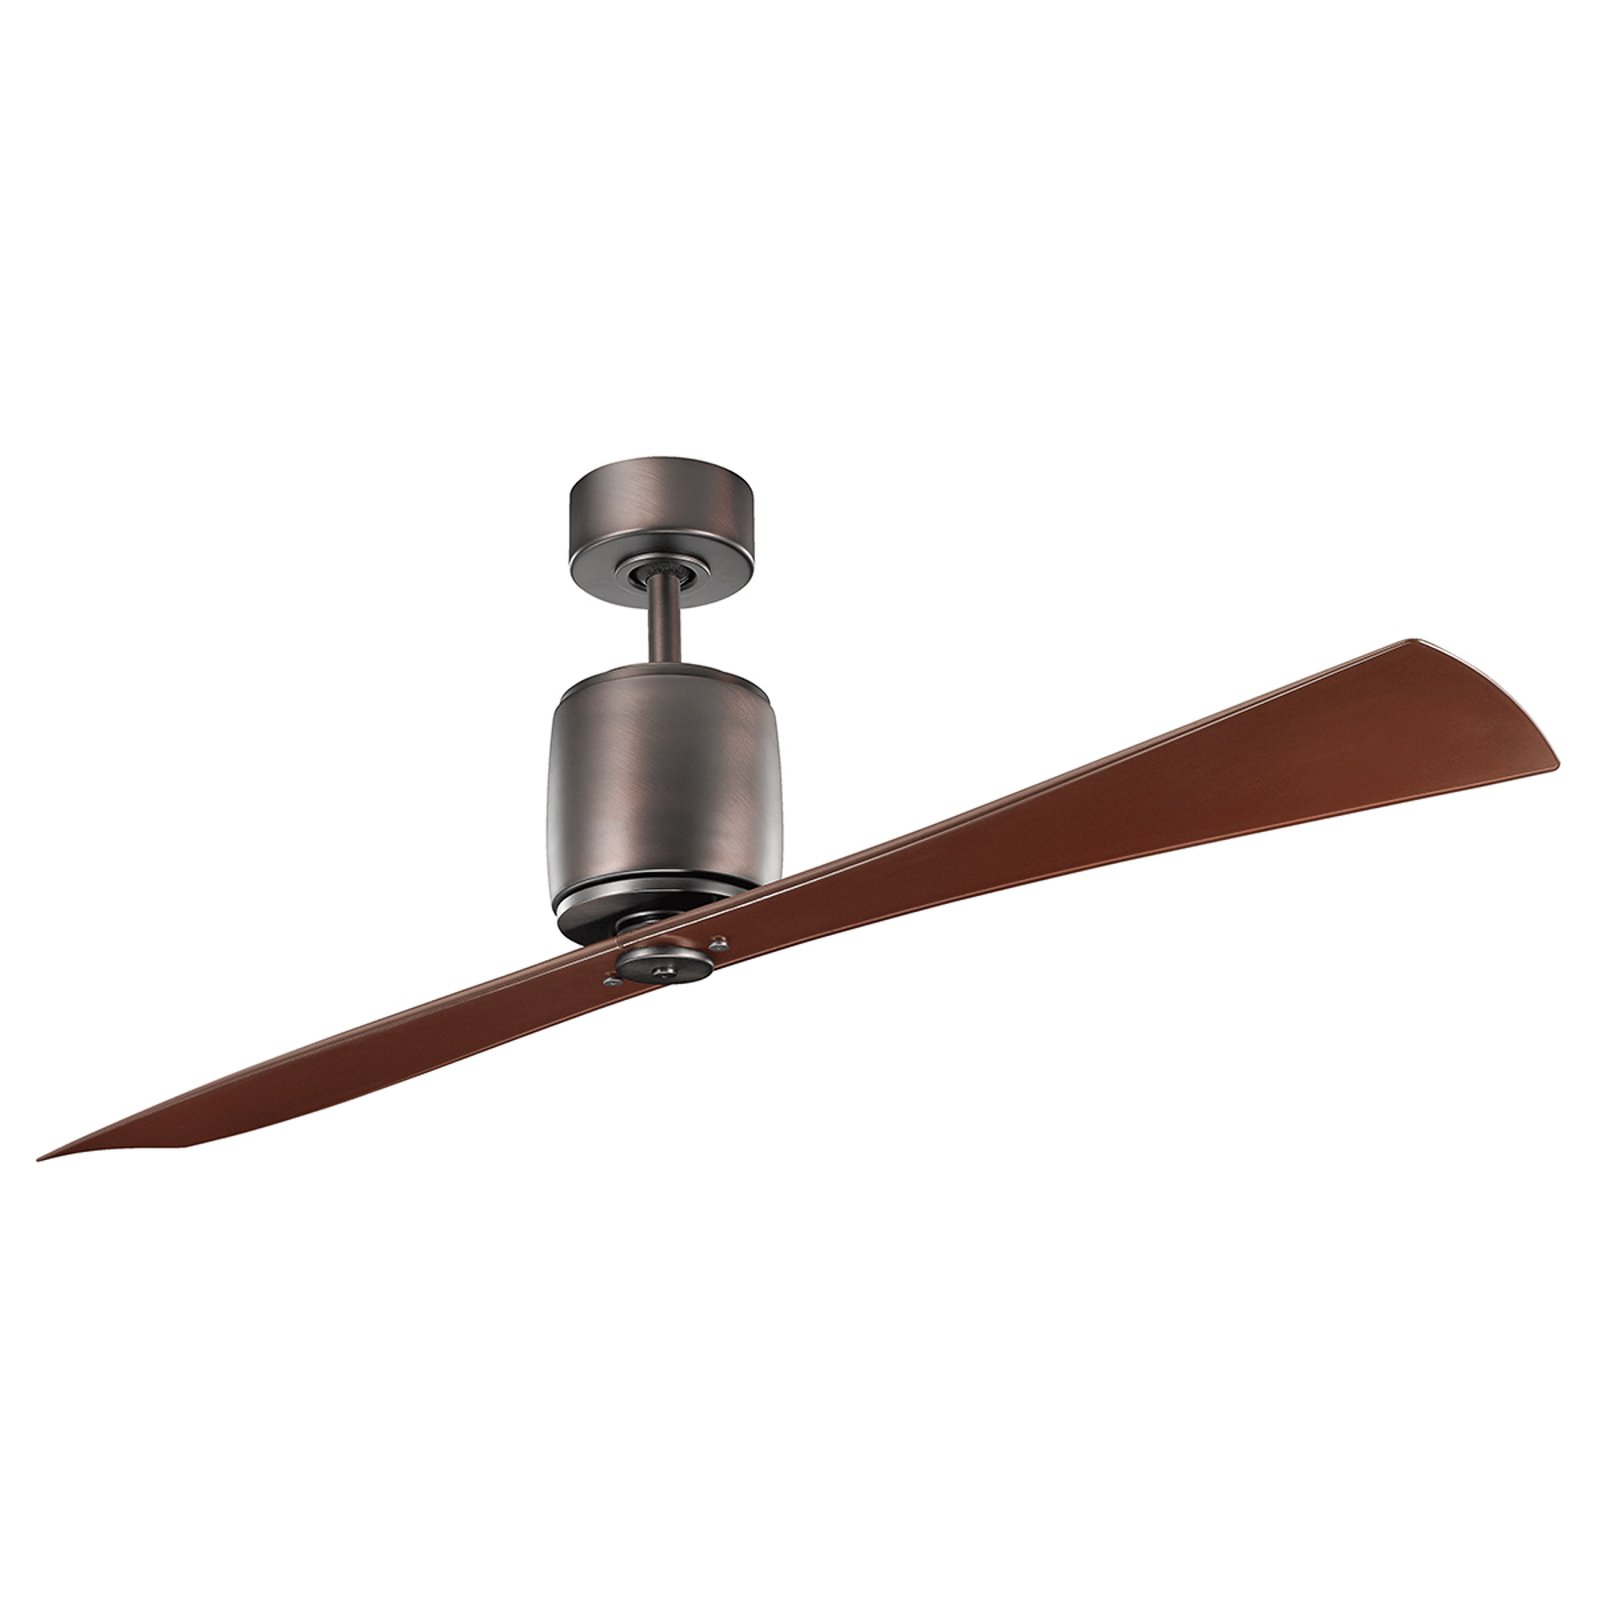 Ferron ceiling fan, oiled bronze blade